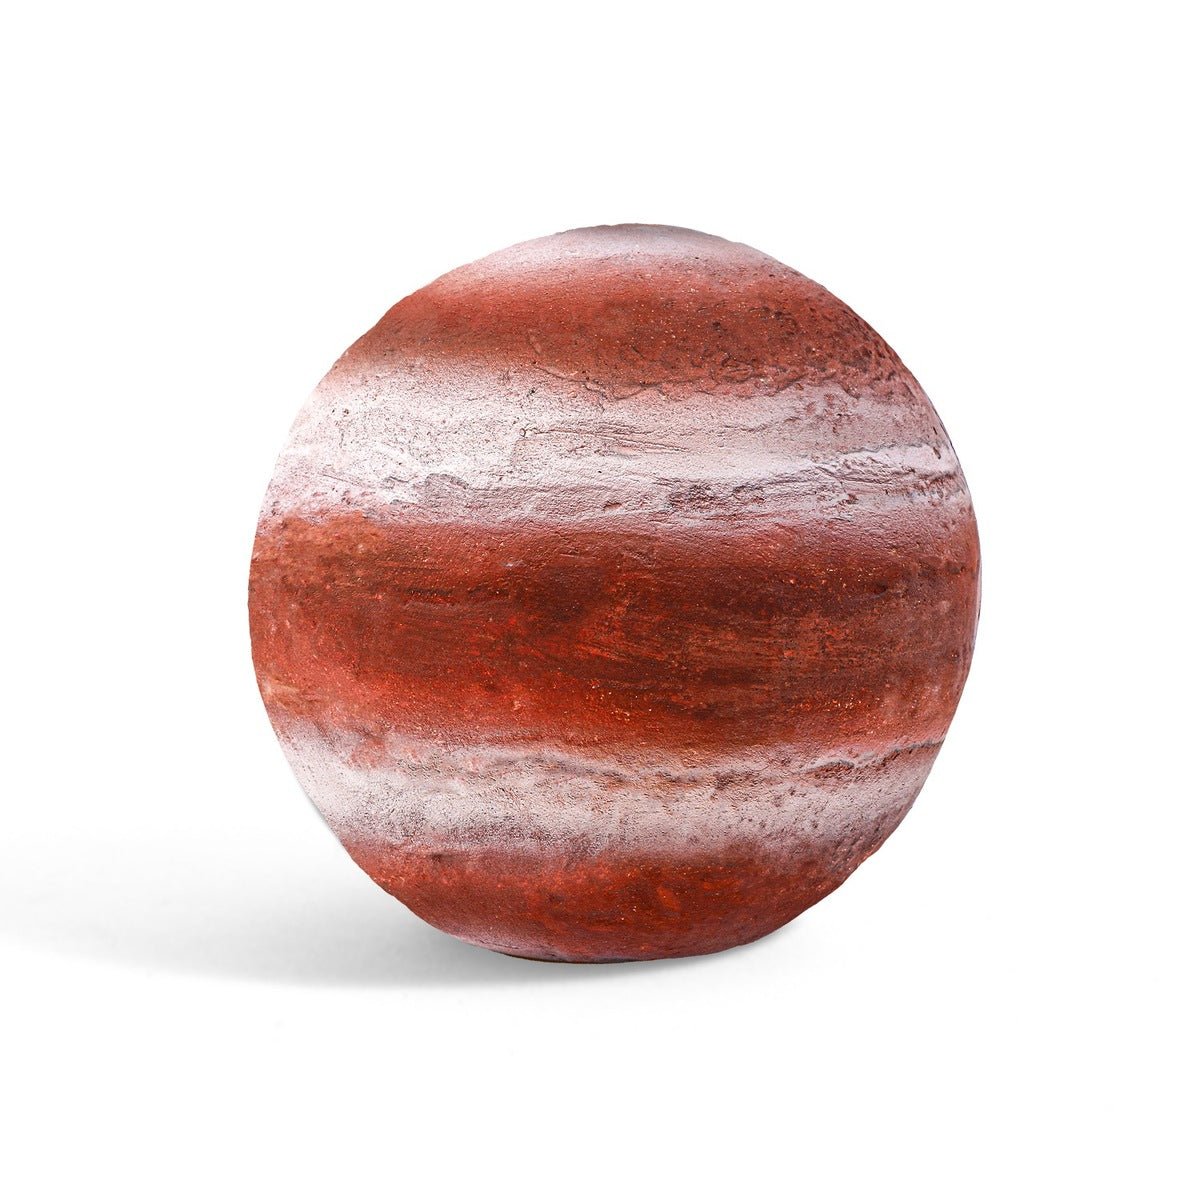 Discover Gemstones with Jupiter Kit